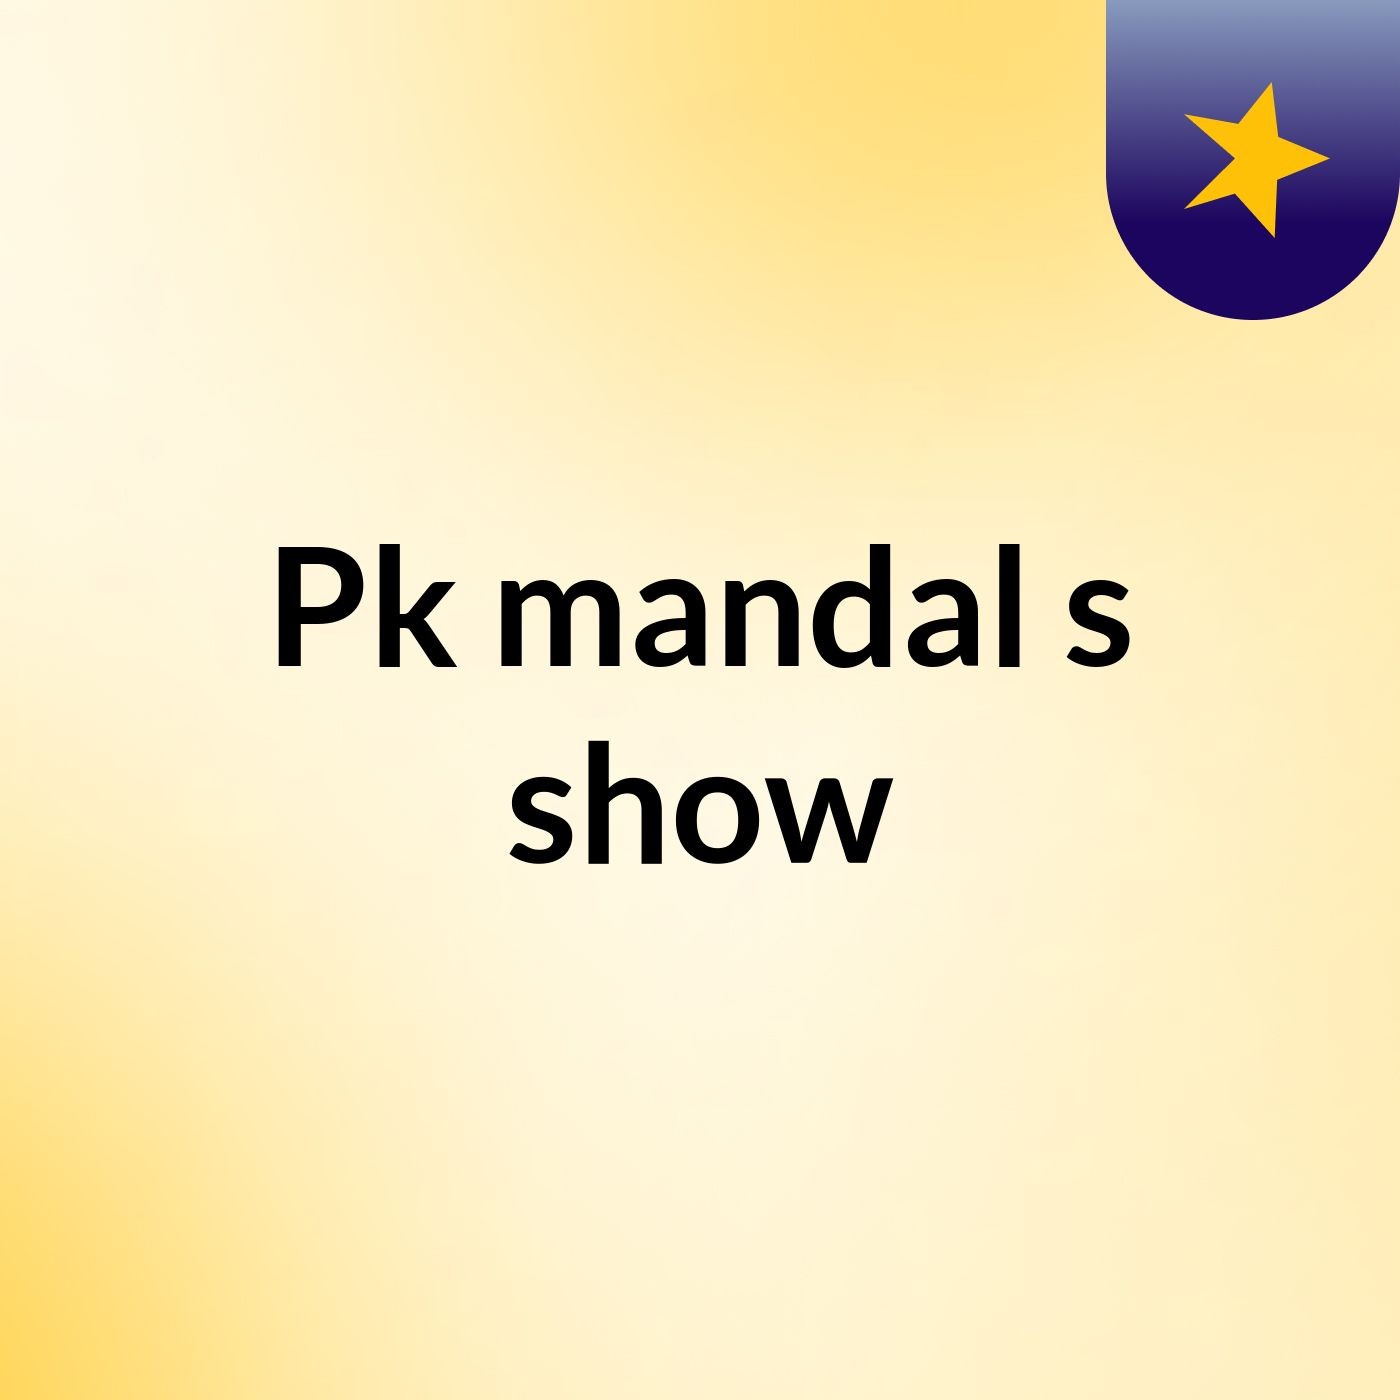 Pk mandal's show